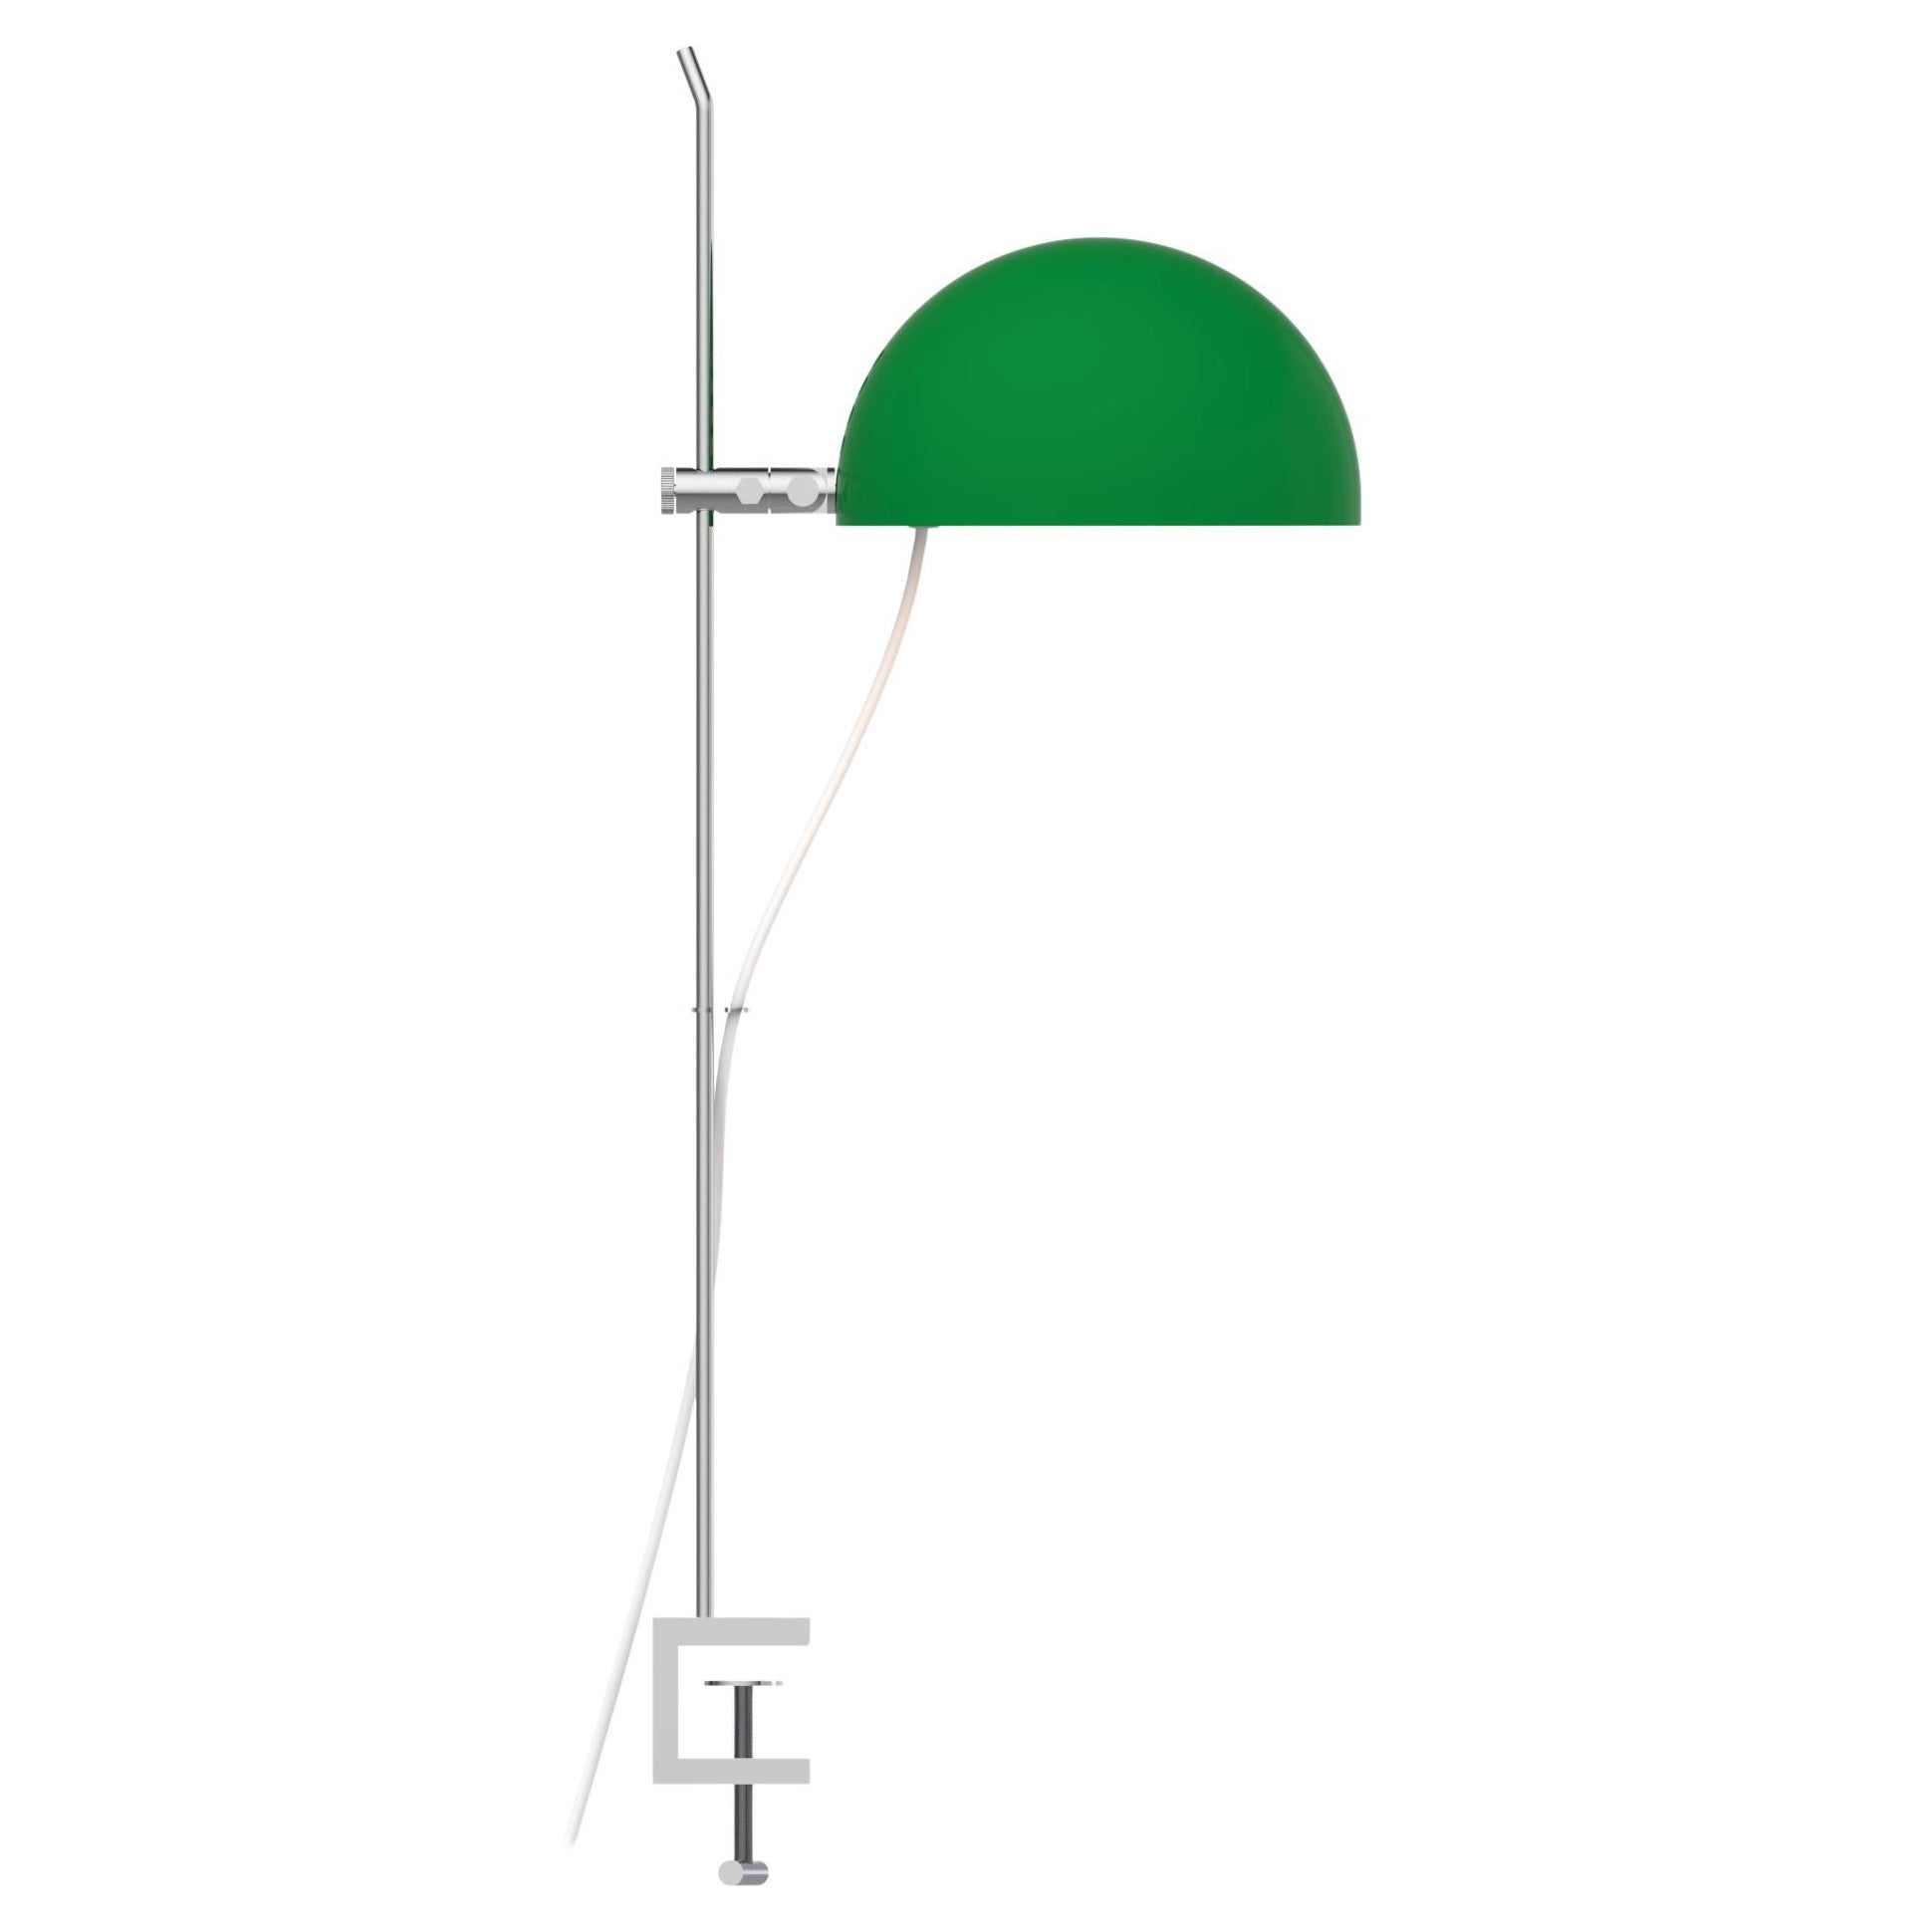 Alain Richard 'A22F' lampe à pampilles en vert pour Disderot